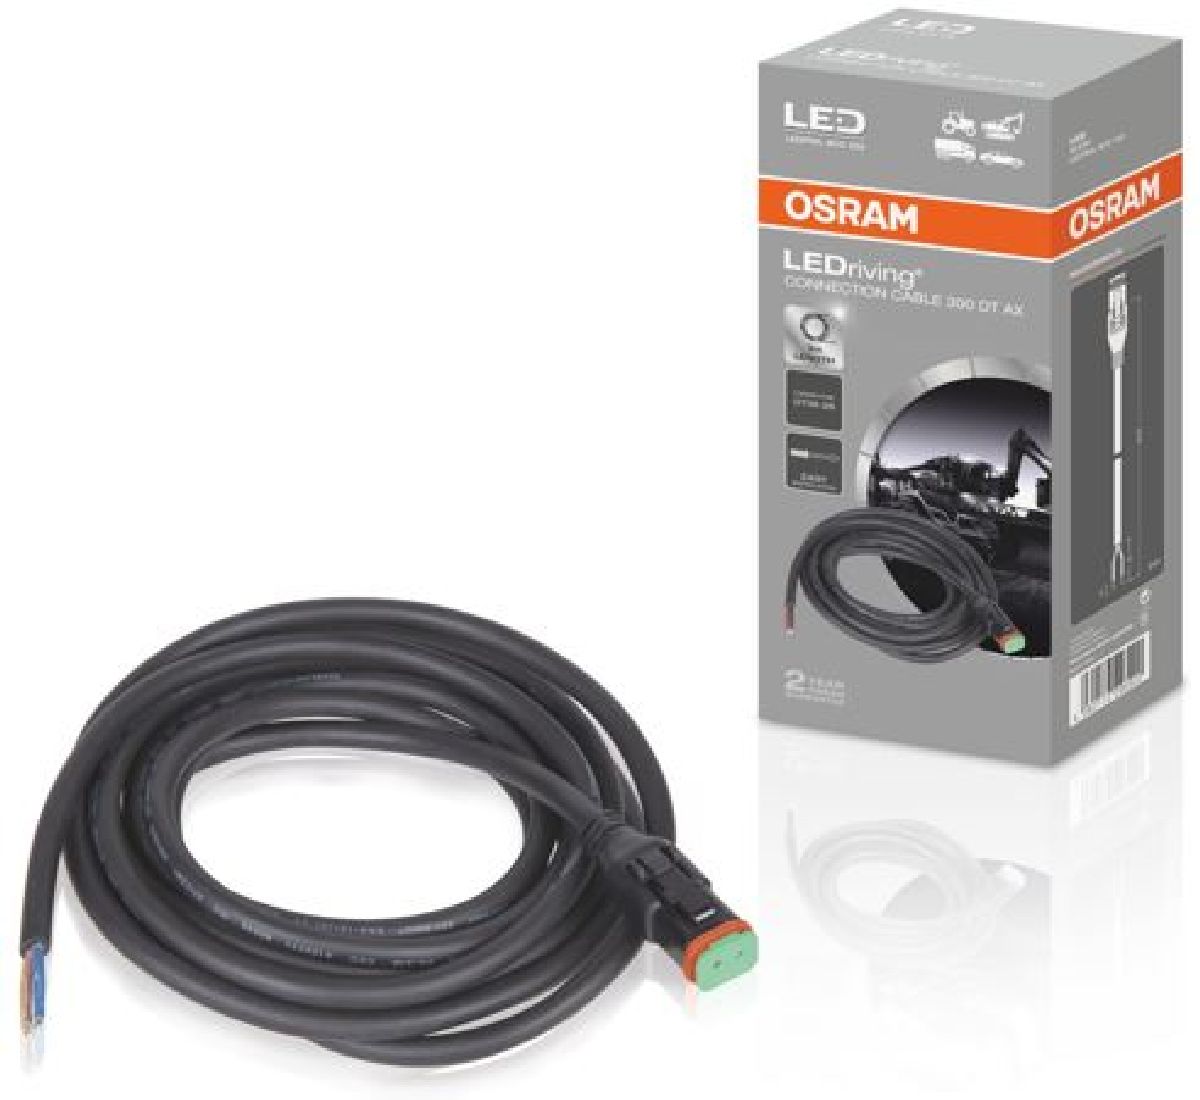 LEDriving Connection Cable 300 DT AX pour la srie PX